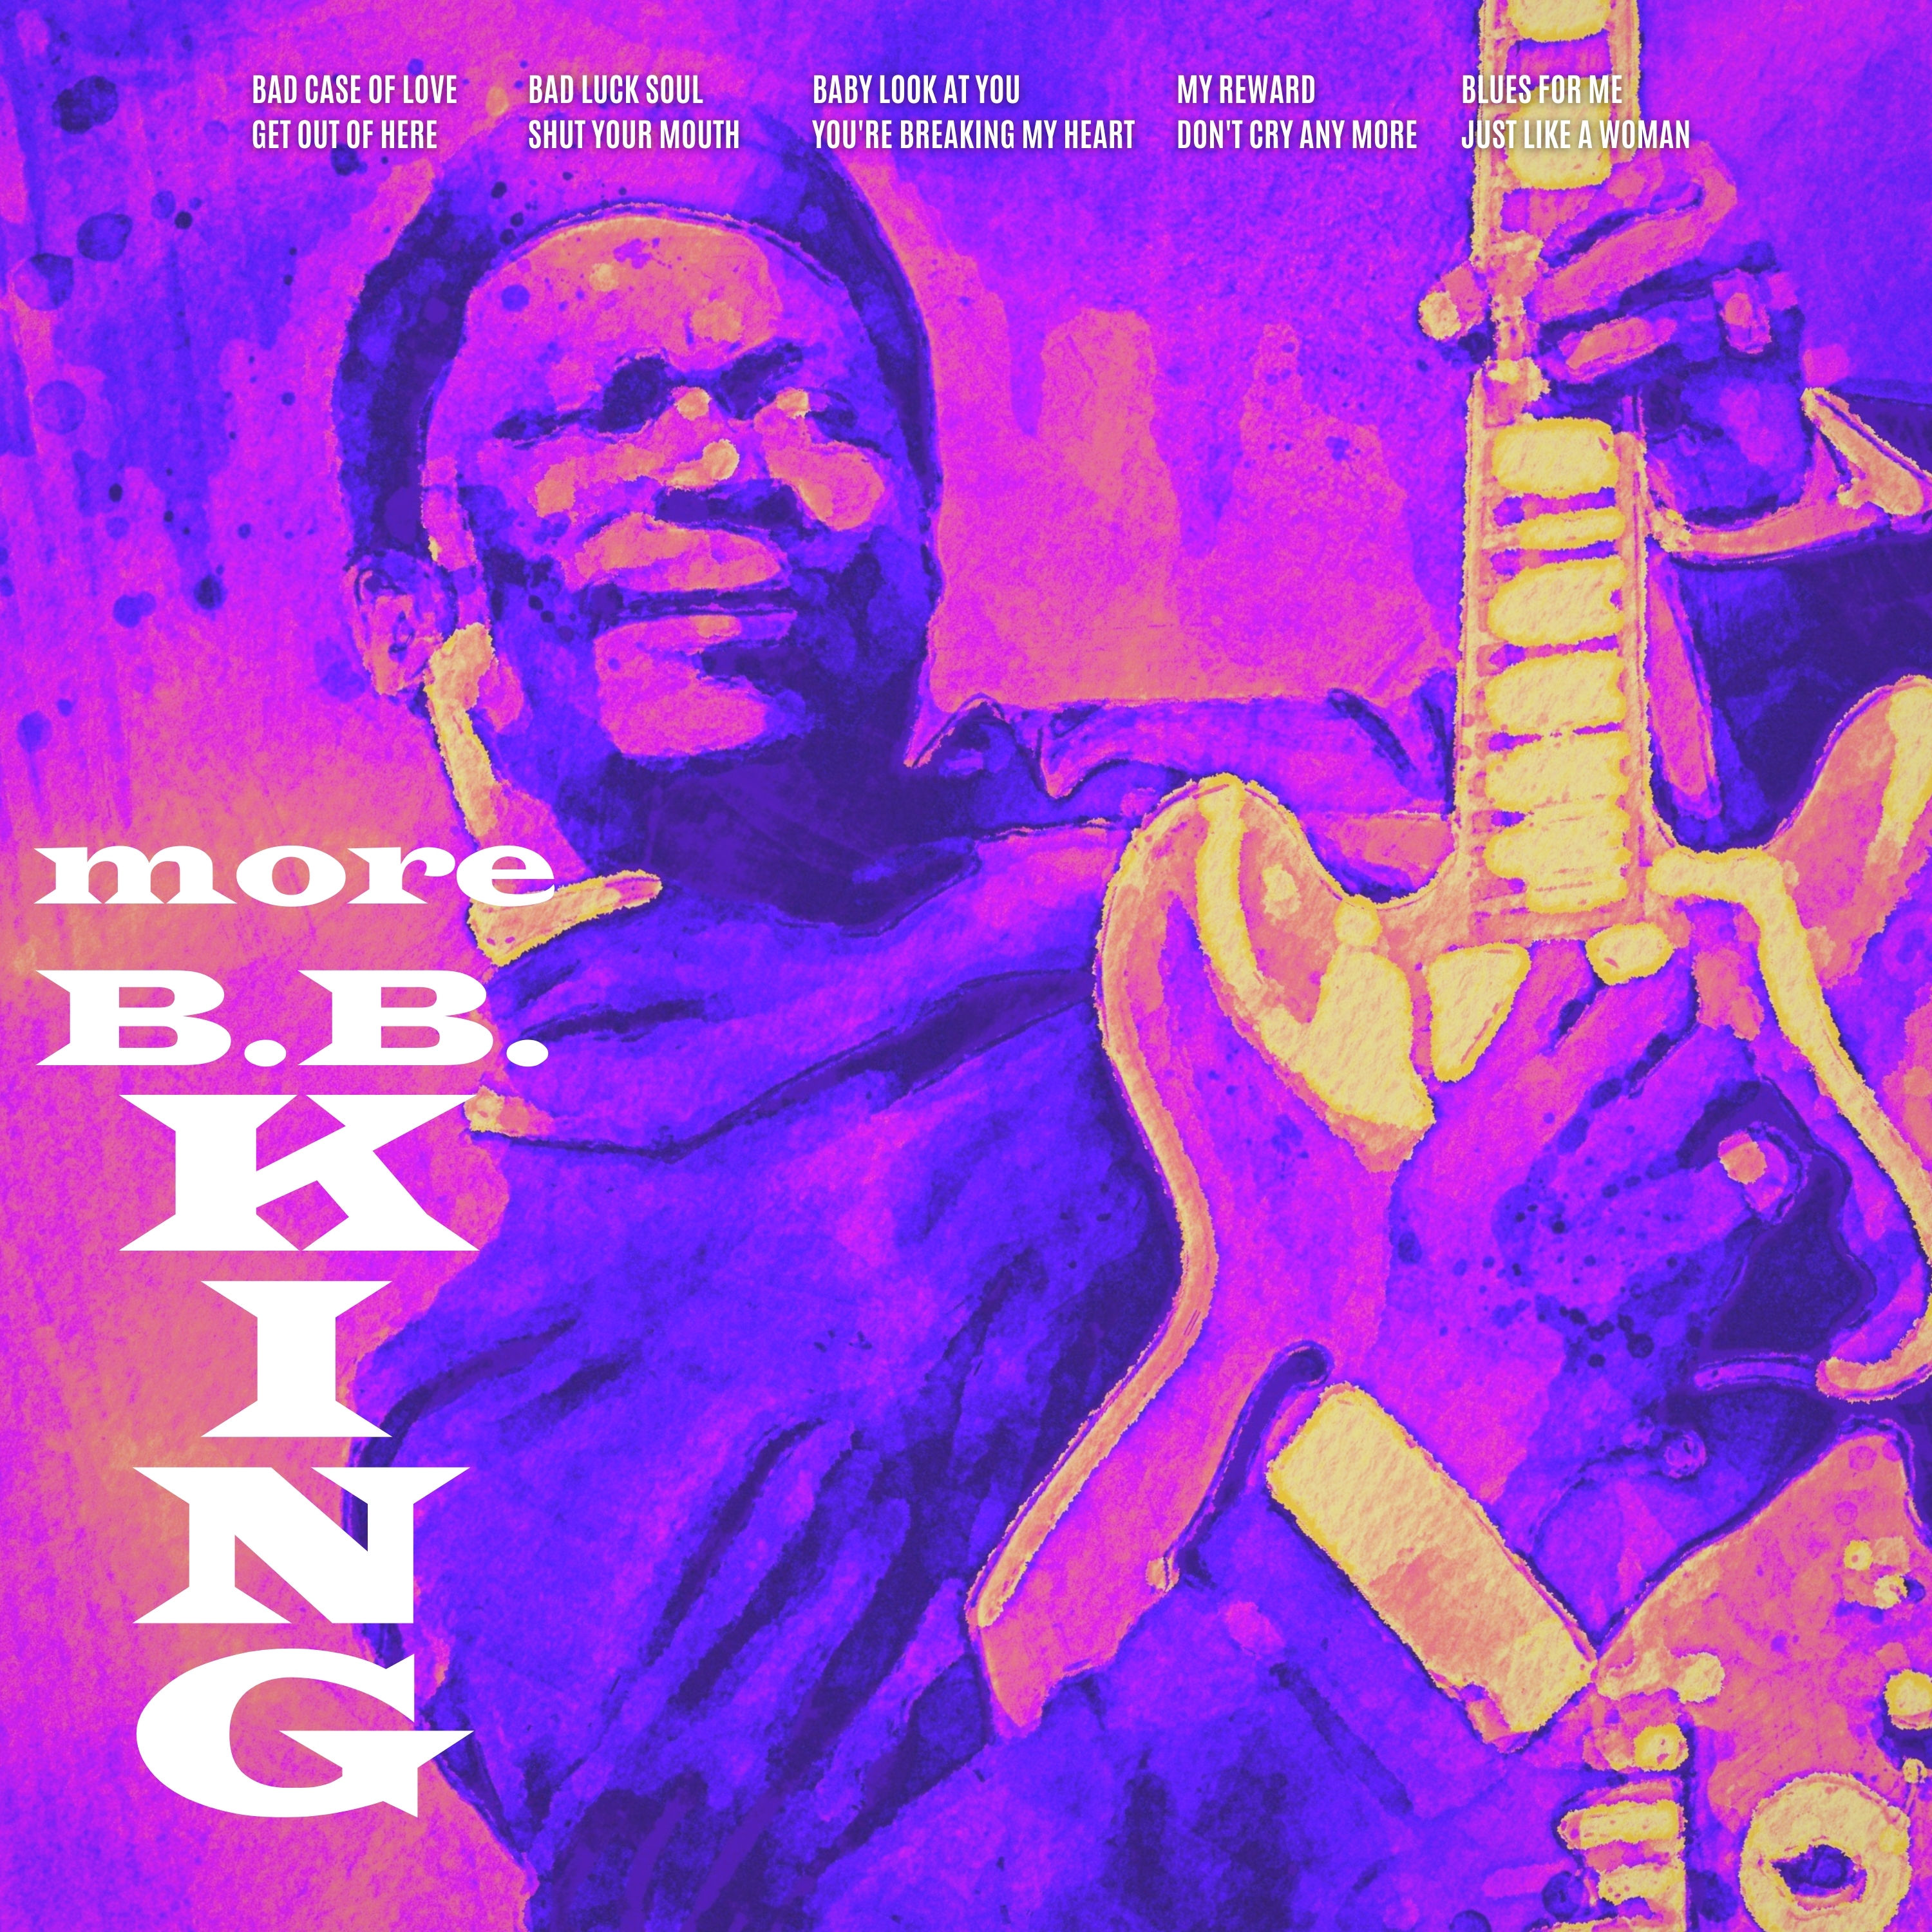 B.B. King - More B.B. King (1961/2021) [FLAC 24bit/48kHz]